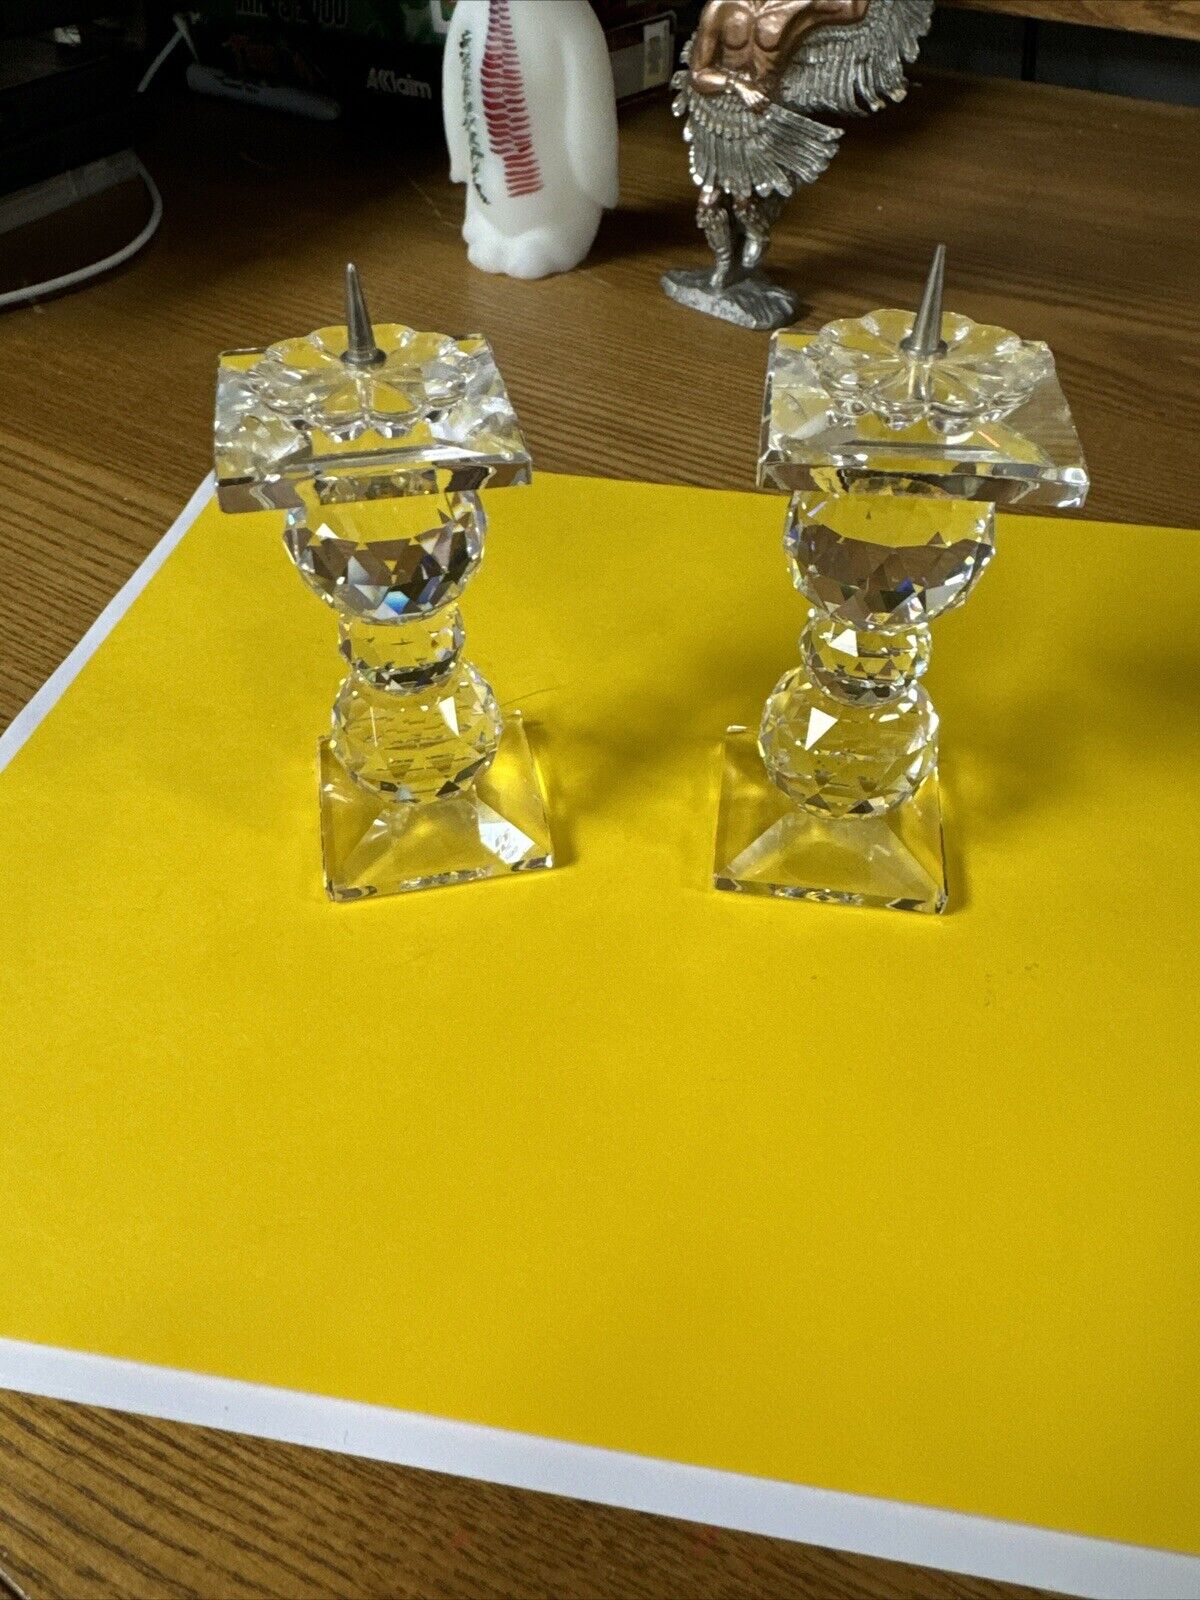 Pair of Swarovski Crystal Art Pin Candleholder~New~No Box